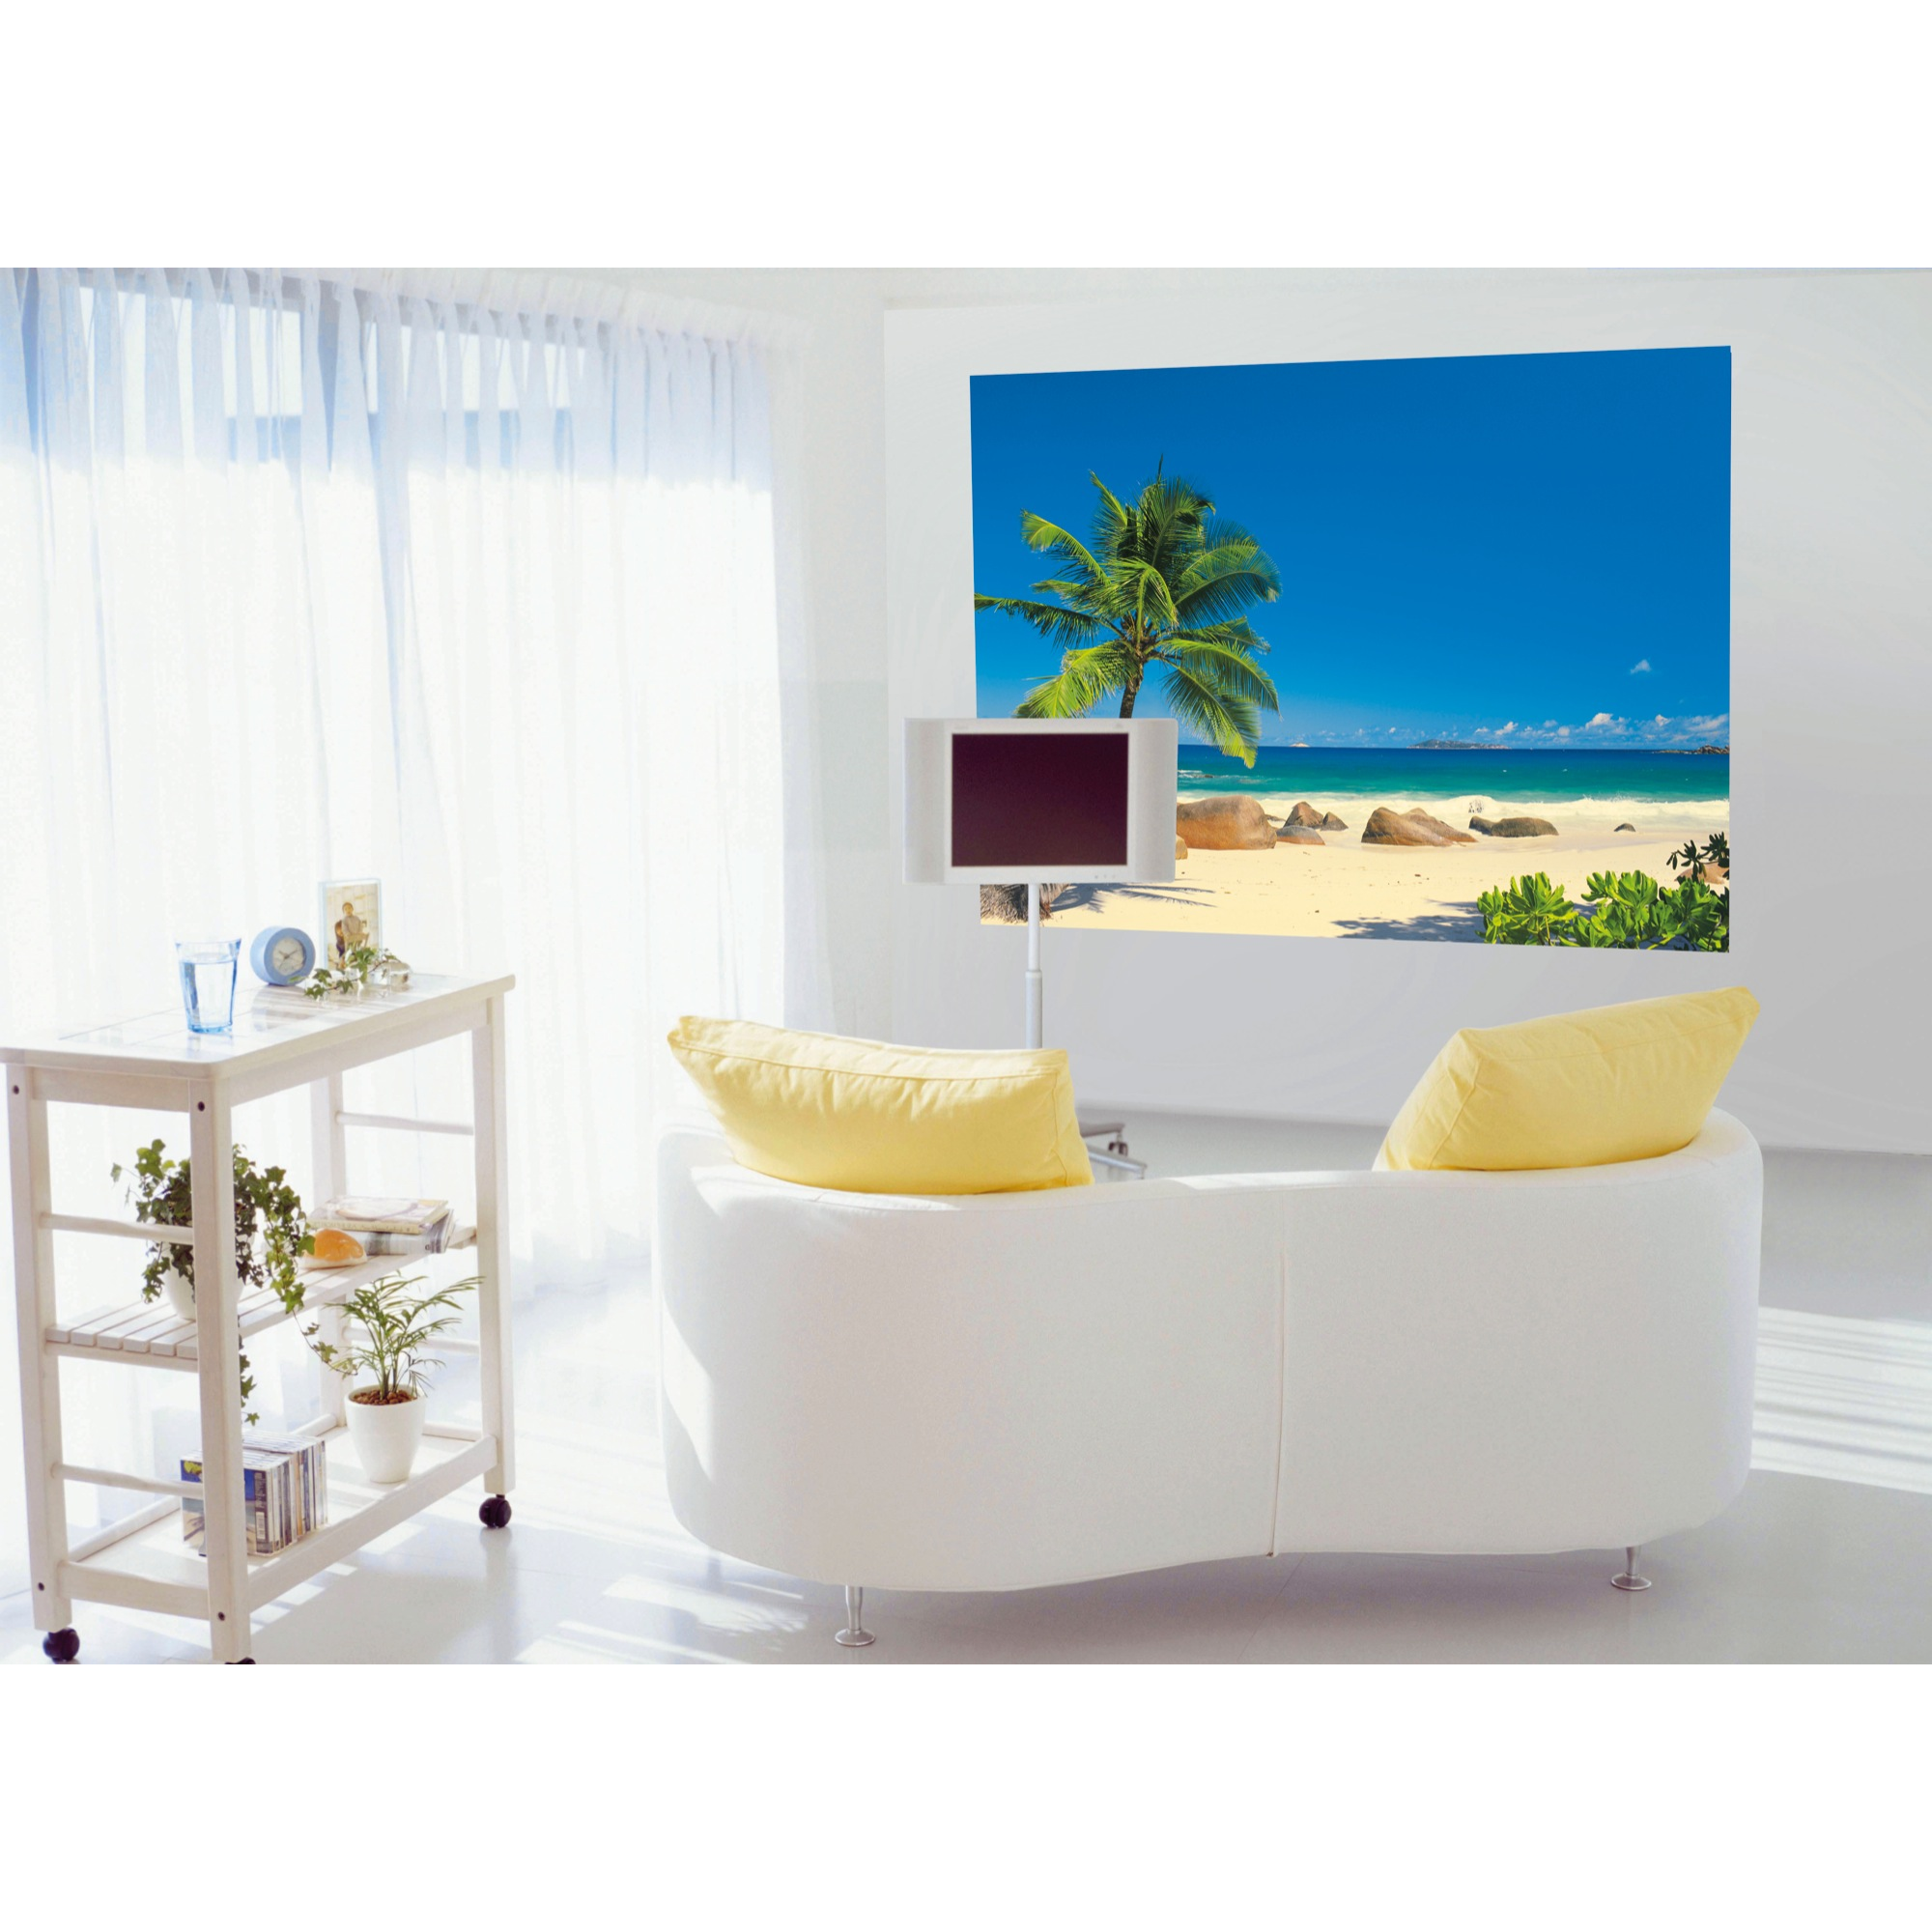 Fototapete 'Seychellen' 270 x 194 cm + product picture